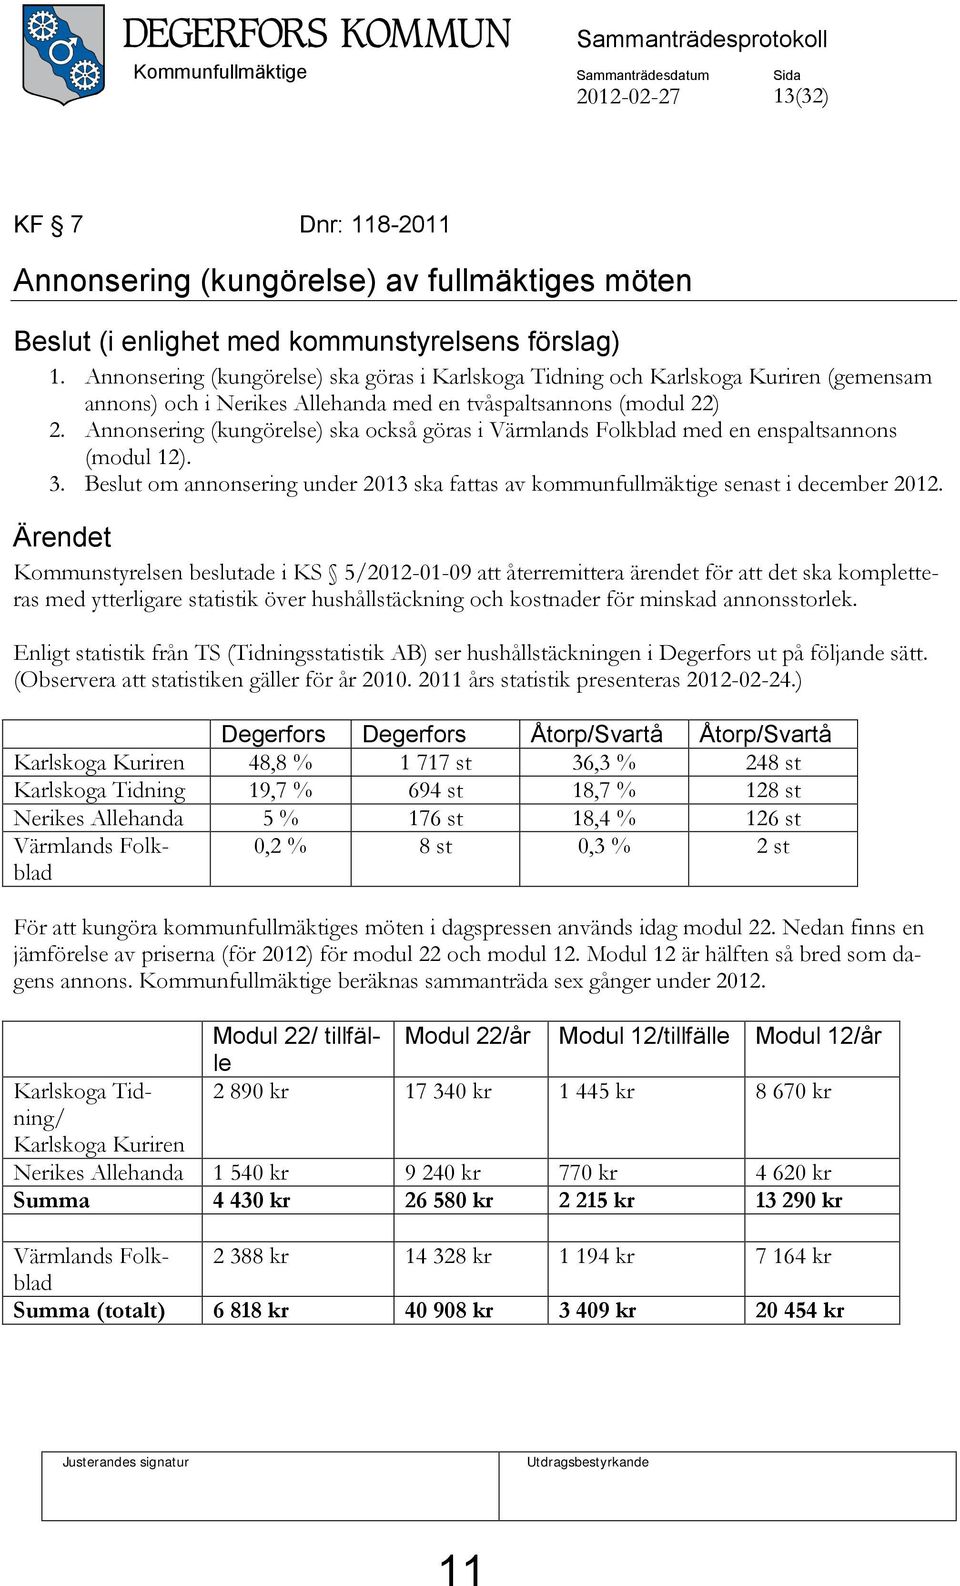 Annonsering (kungörelse) ska också göras i Värmlands Folkblad med en enspaltsannons (modul 12). 3. Beslut om annonsering under 2013 ska fattas av kommunfullmäktige senast i december 2012.